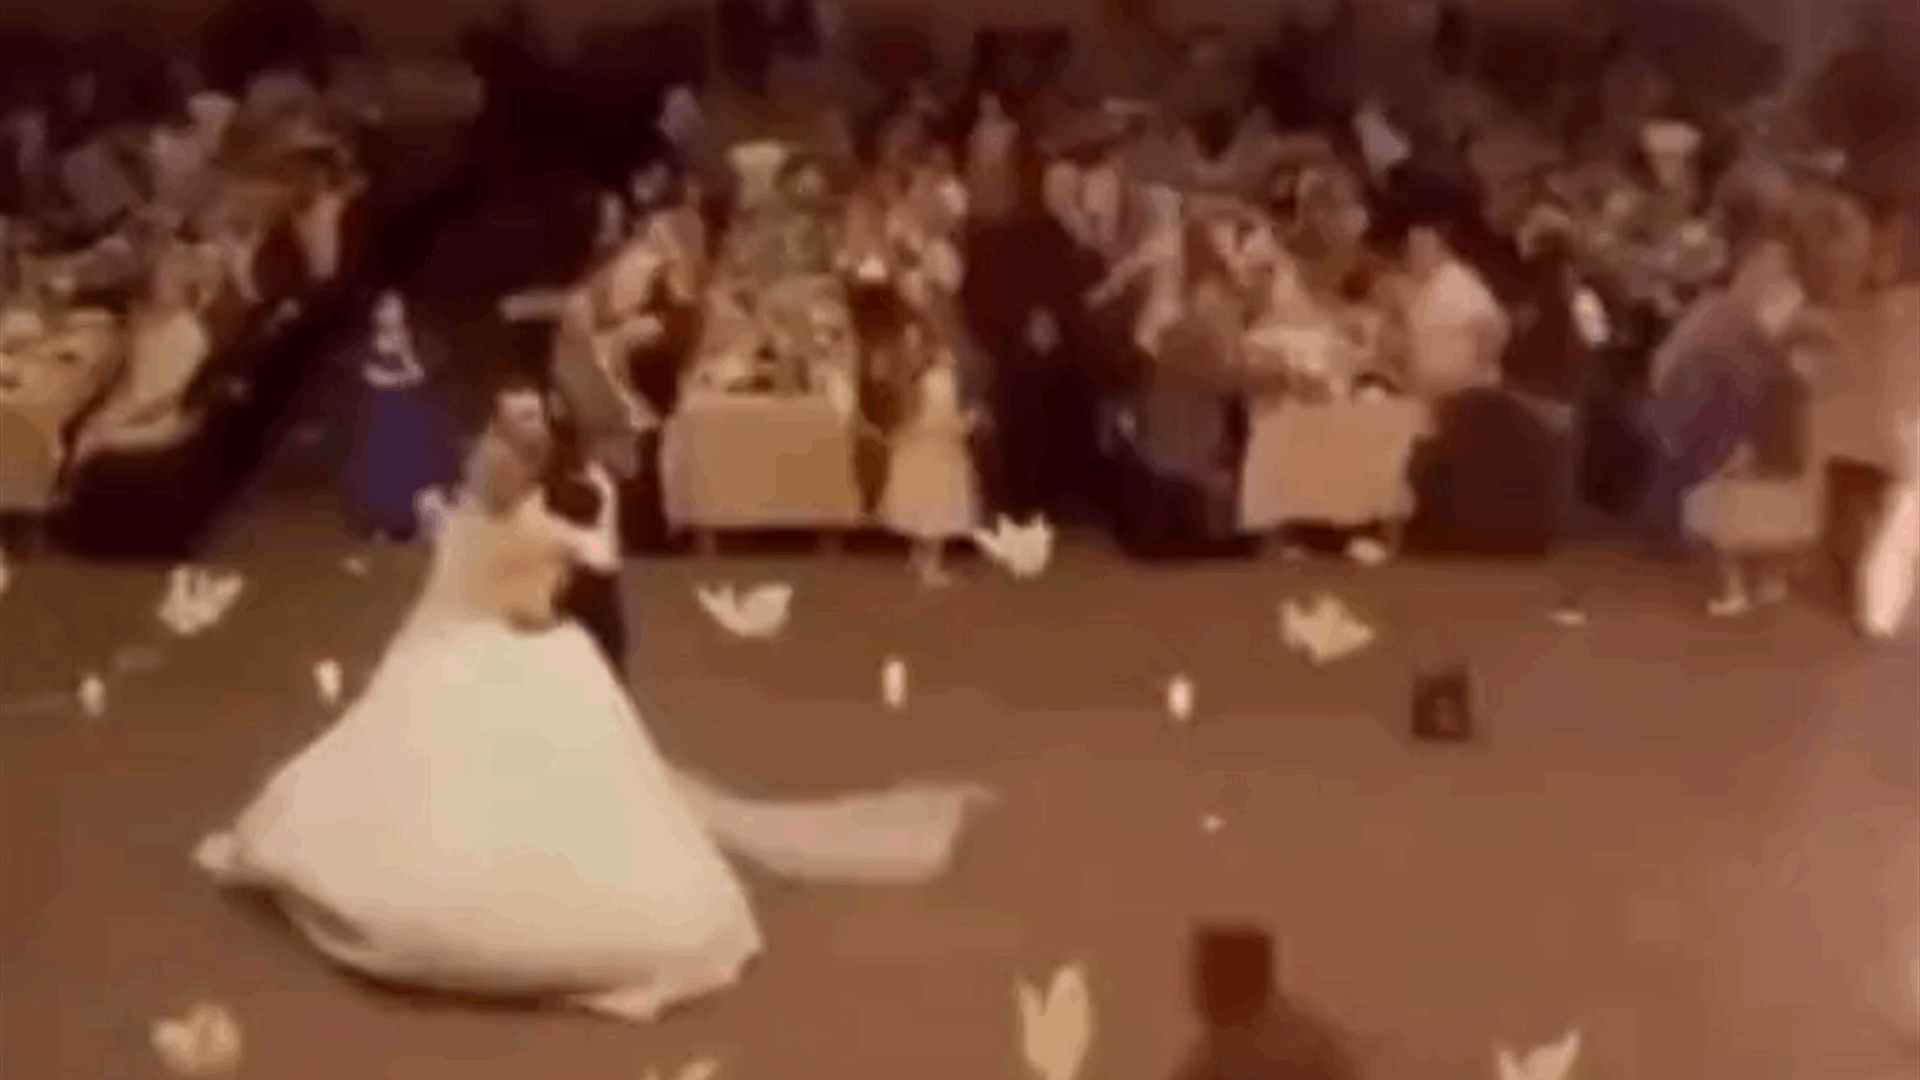 فيديو جديد ومرعب للحظة اندلاع الحريق في حفل الزفاف الذي تحول الى كارثة في العراق! (فيديو)